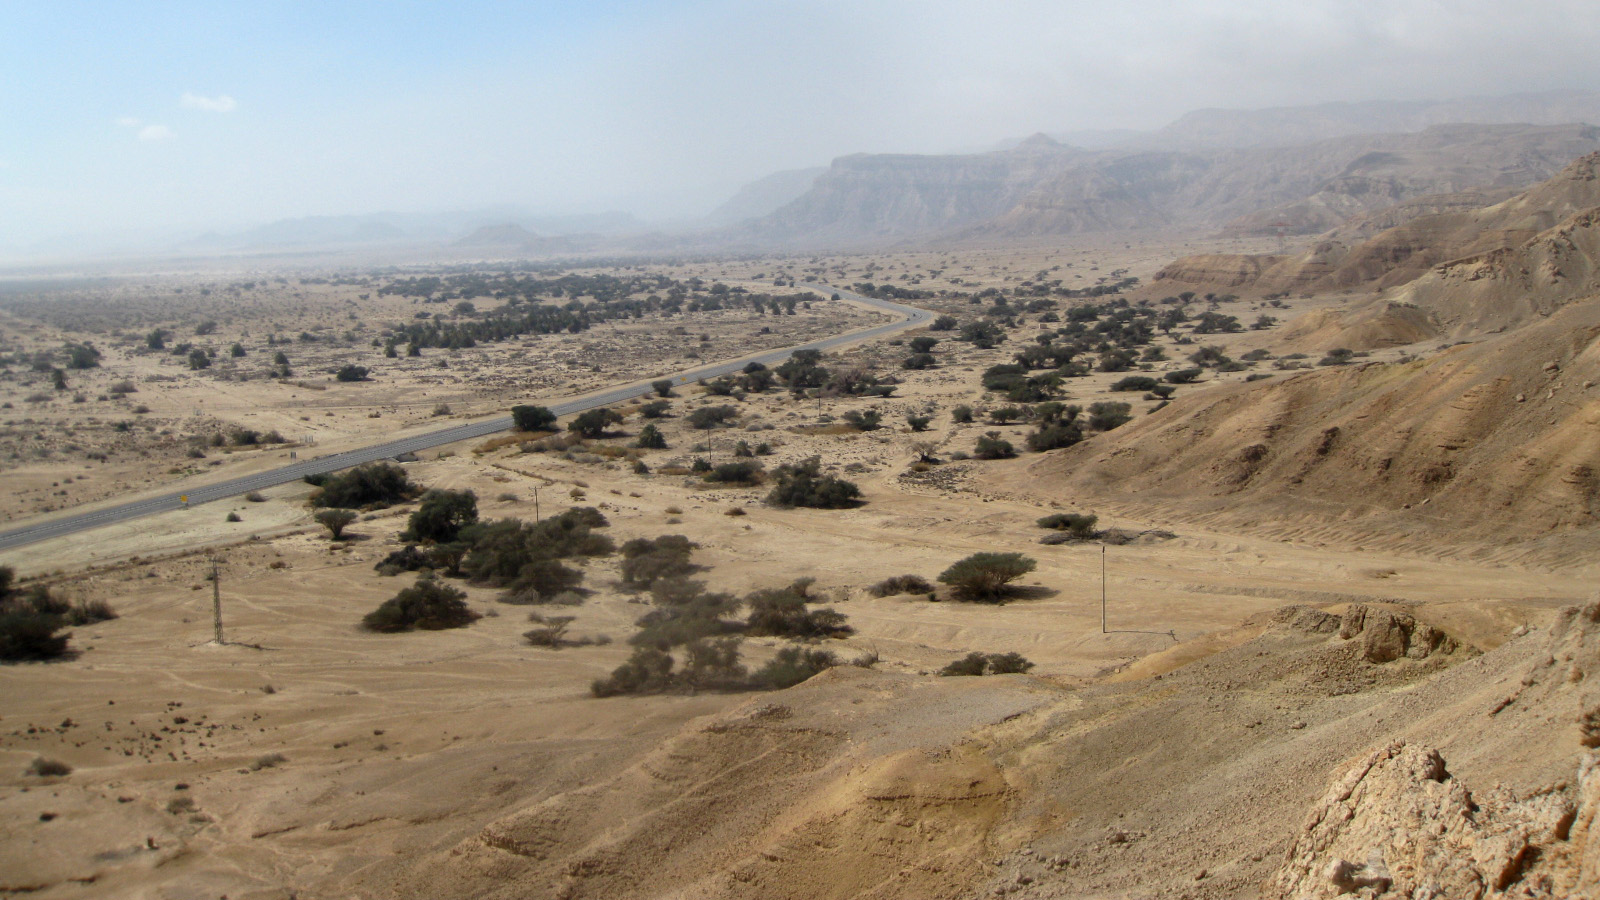 מבט ממצודת יטבתה דרומה. נווה יטבתה ומרחבי הערבה הדרומית נשקפים מראש הגבעה (צילום: Tznufkin/wikimedia).